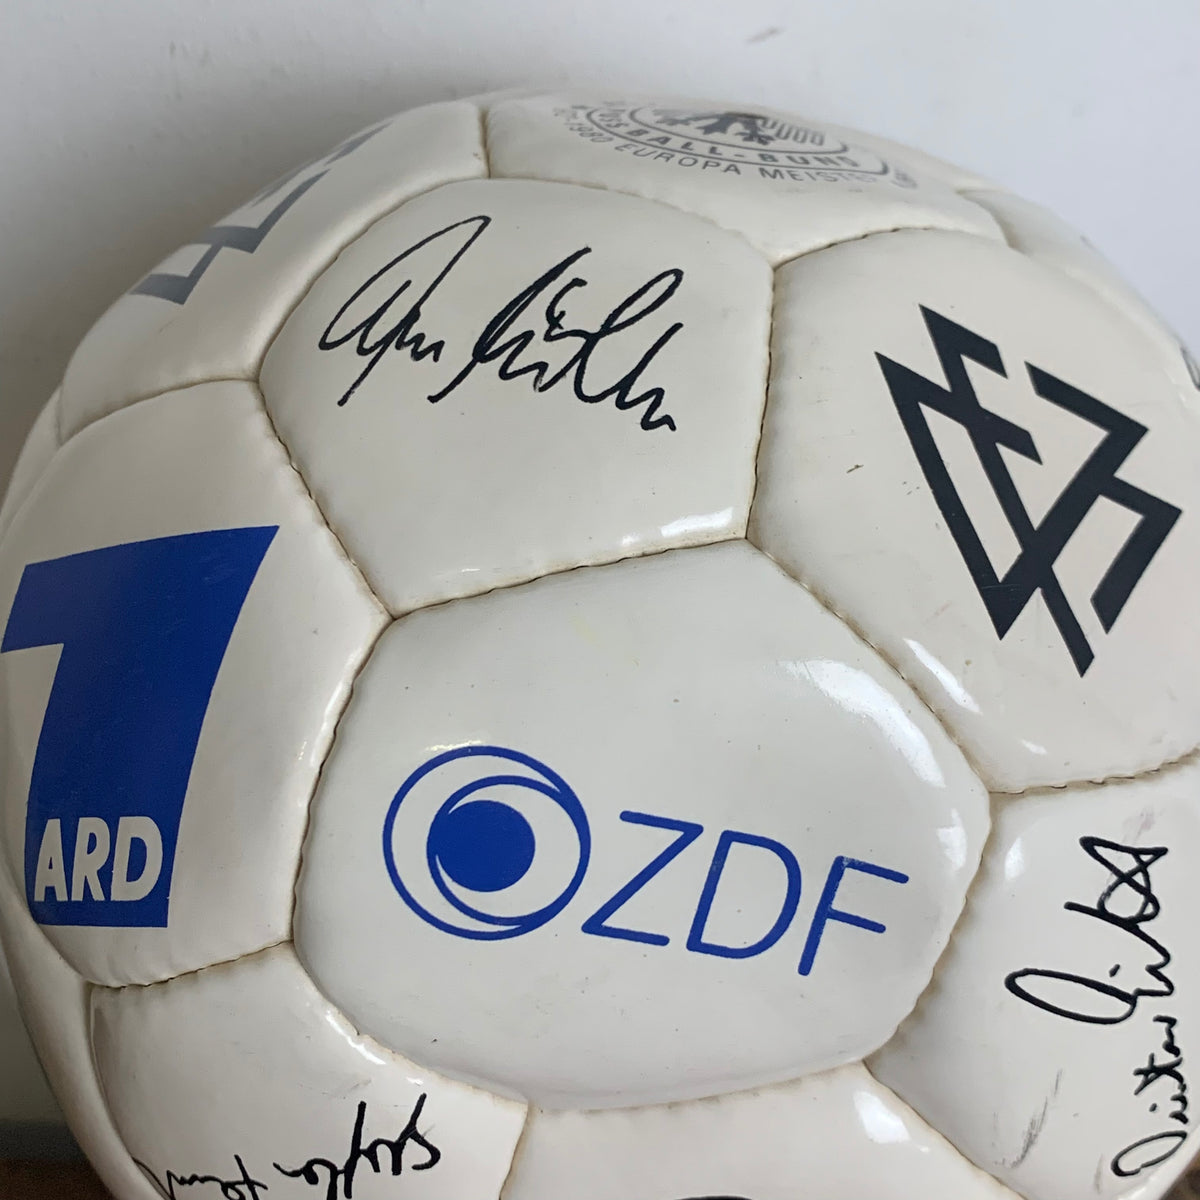 Fußball mit Autogrammen gedruckt DFB Weltmeister Fußball ARD ZDF